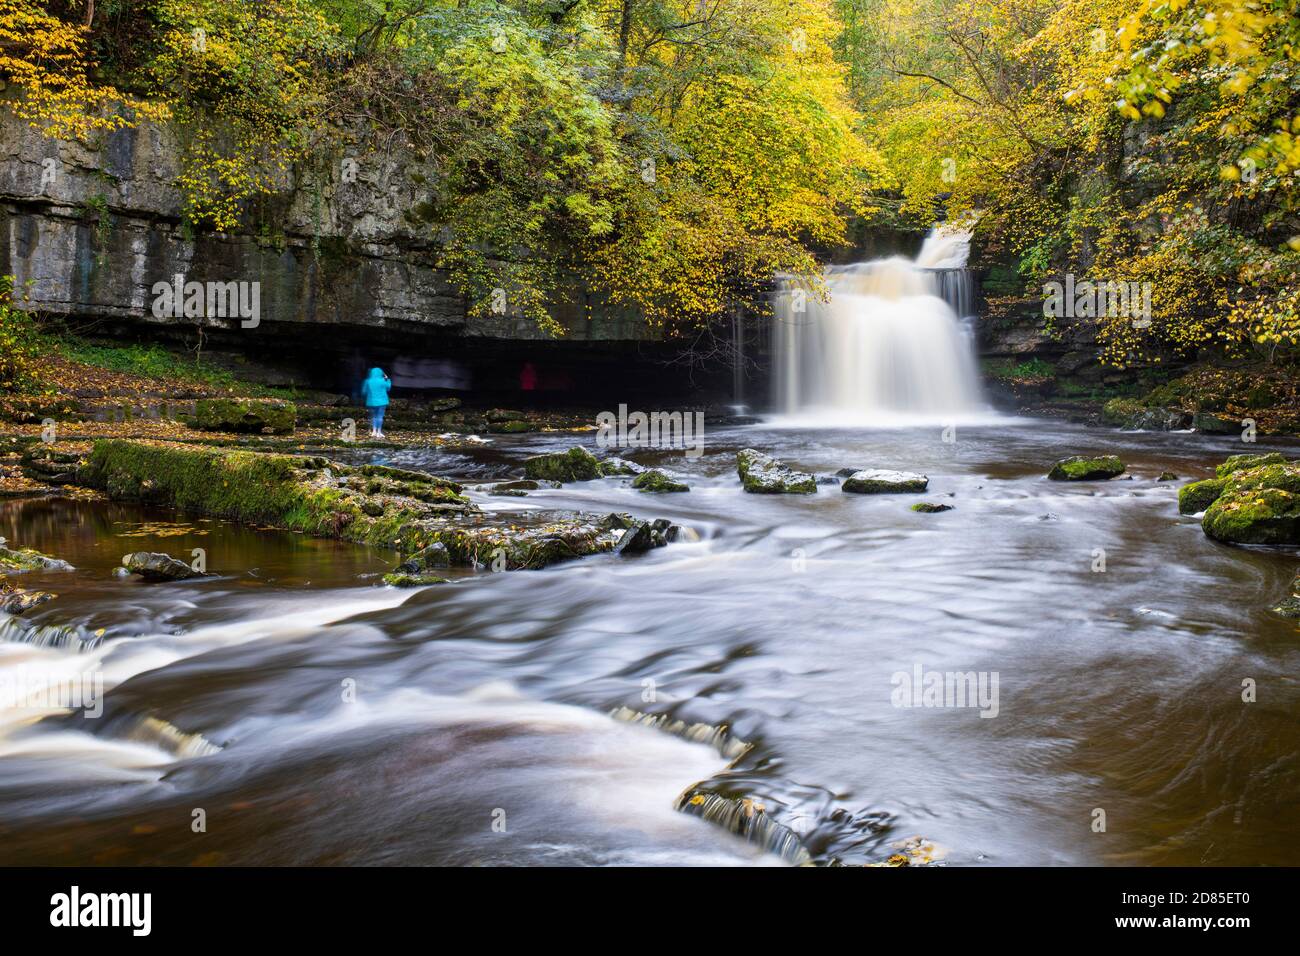 Cattura il momento del fiume in acqua a Cauldron Falls, West Burton, Yorkshire Dales, Regno Unito Foto Stock